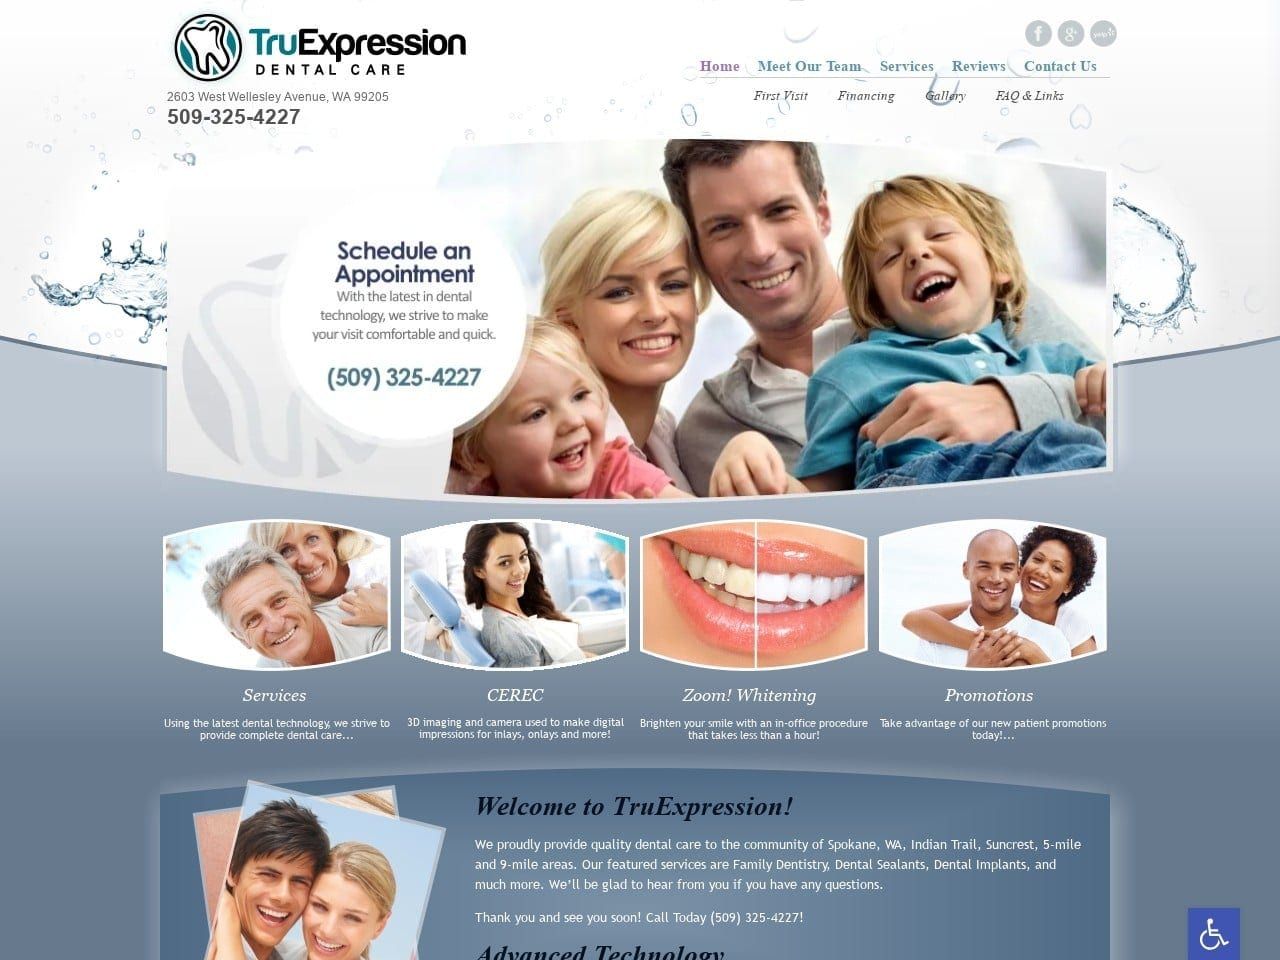 TruExpression Dental Care Website Screenshot from tru-expression.com